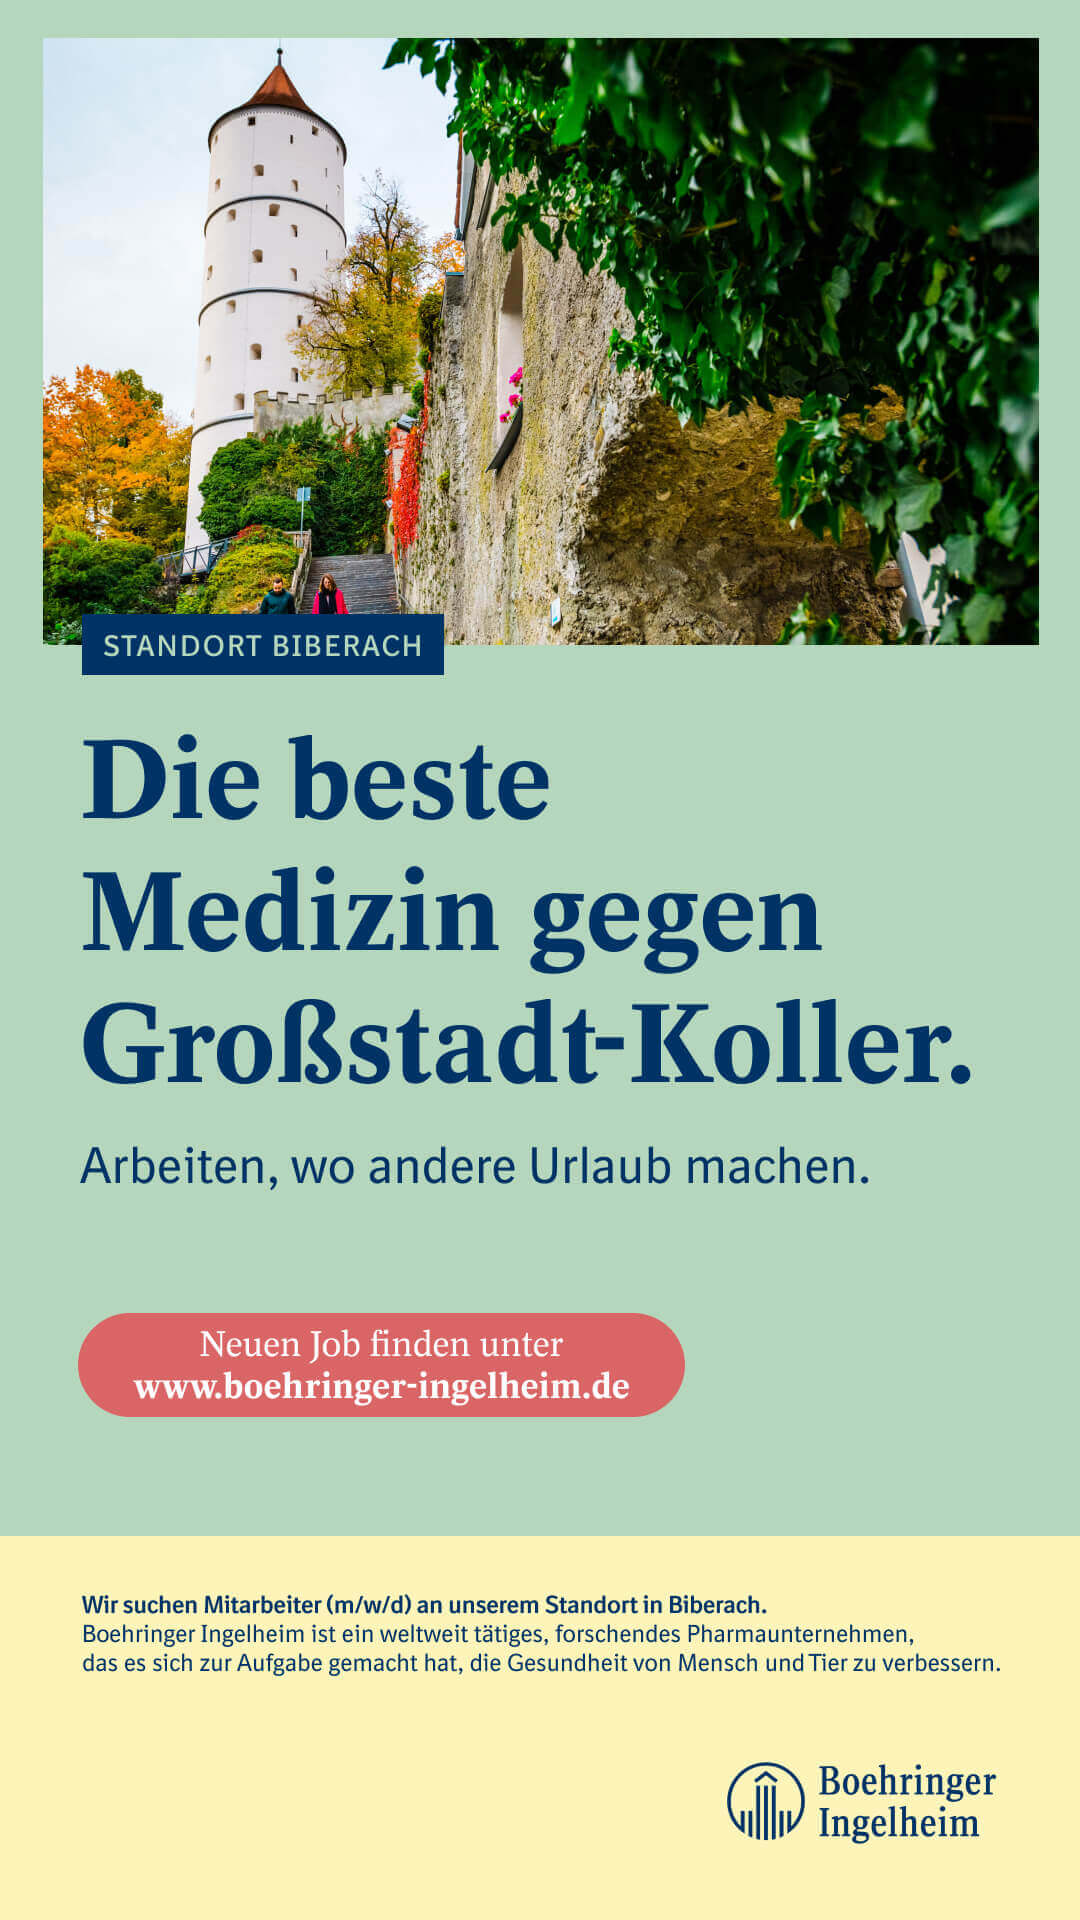 Kampagnenmotiv DOOH für den Standort Biberach